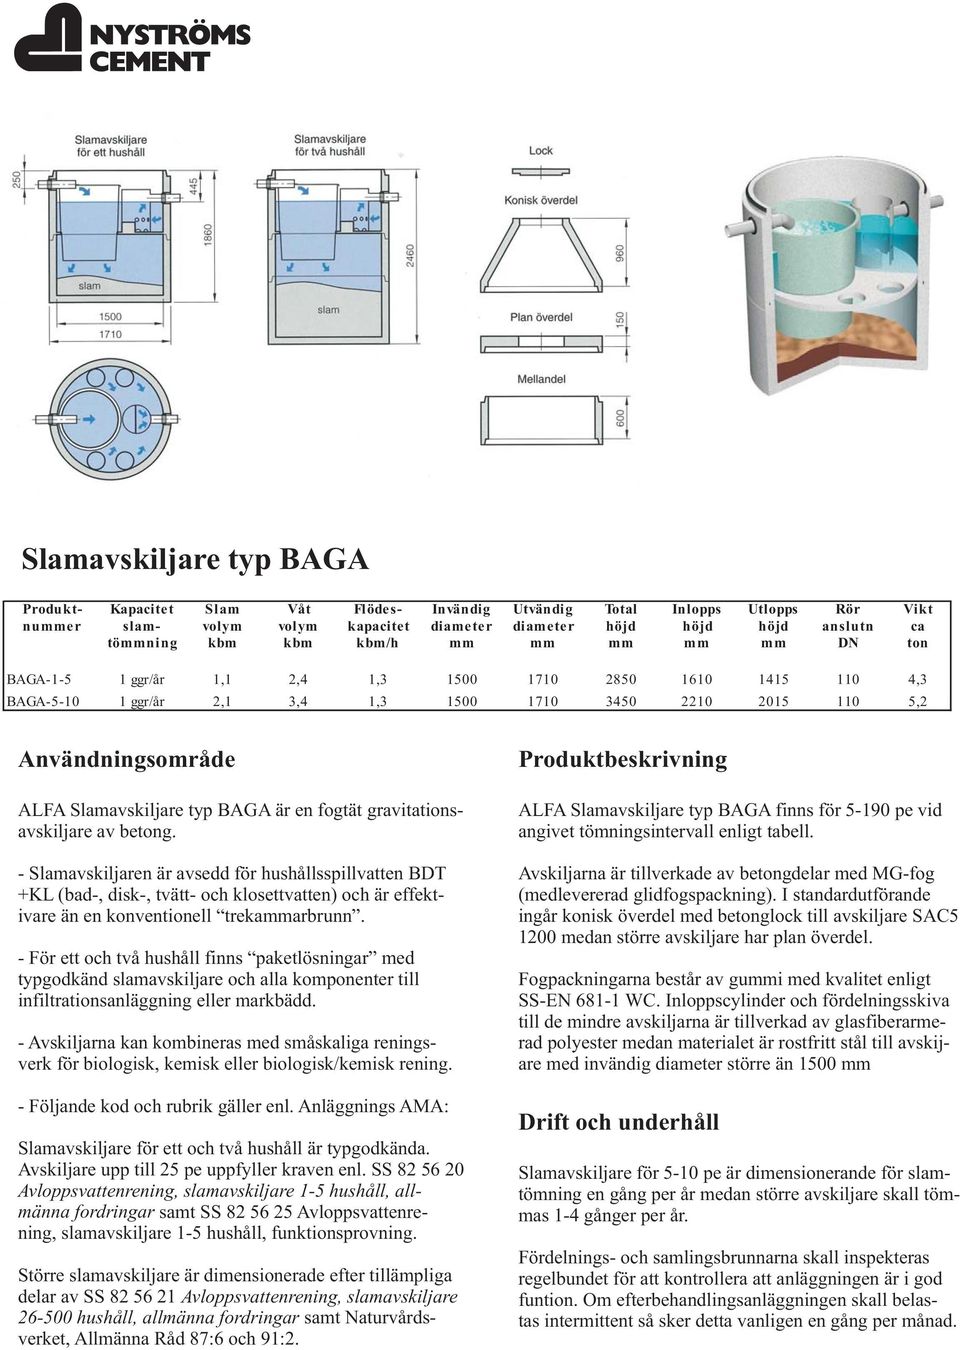 Slamavskiljare typ BAGA är en fogtät gravitationsavskiljare av betong.